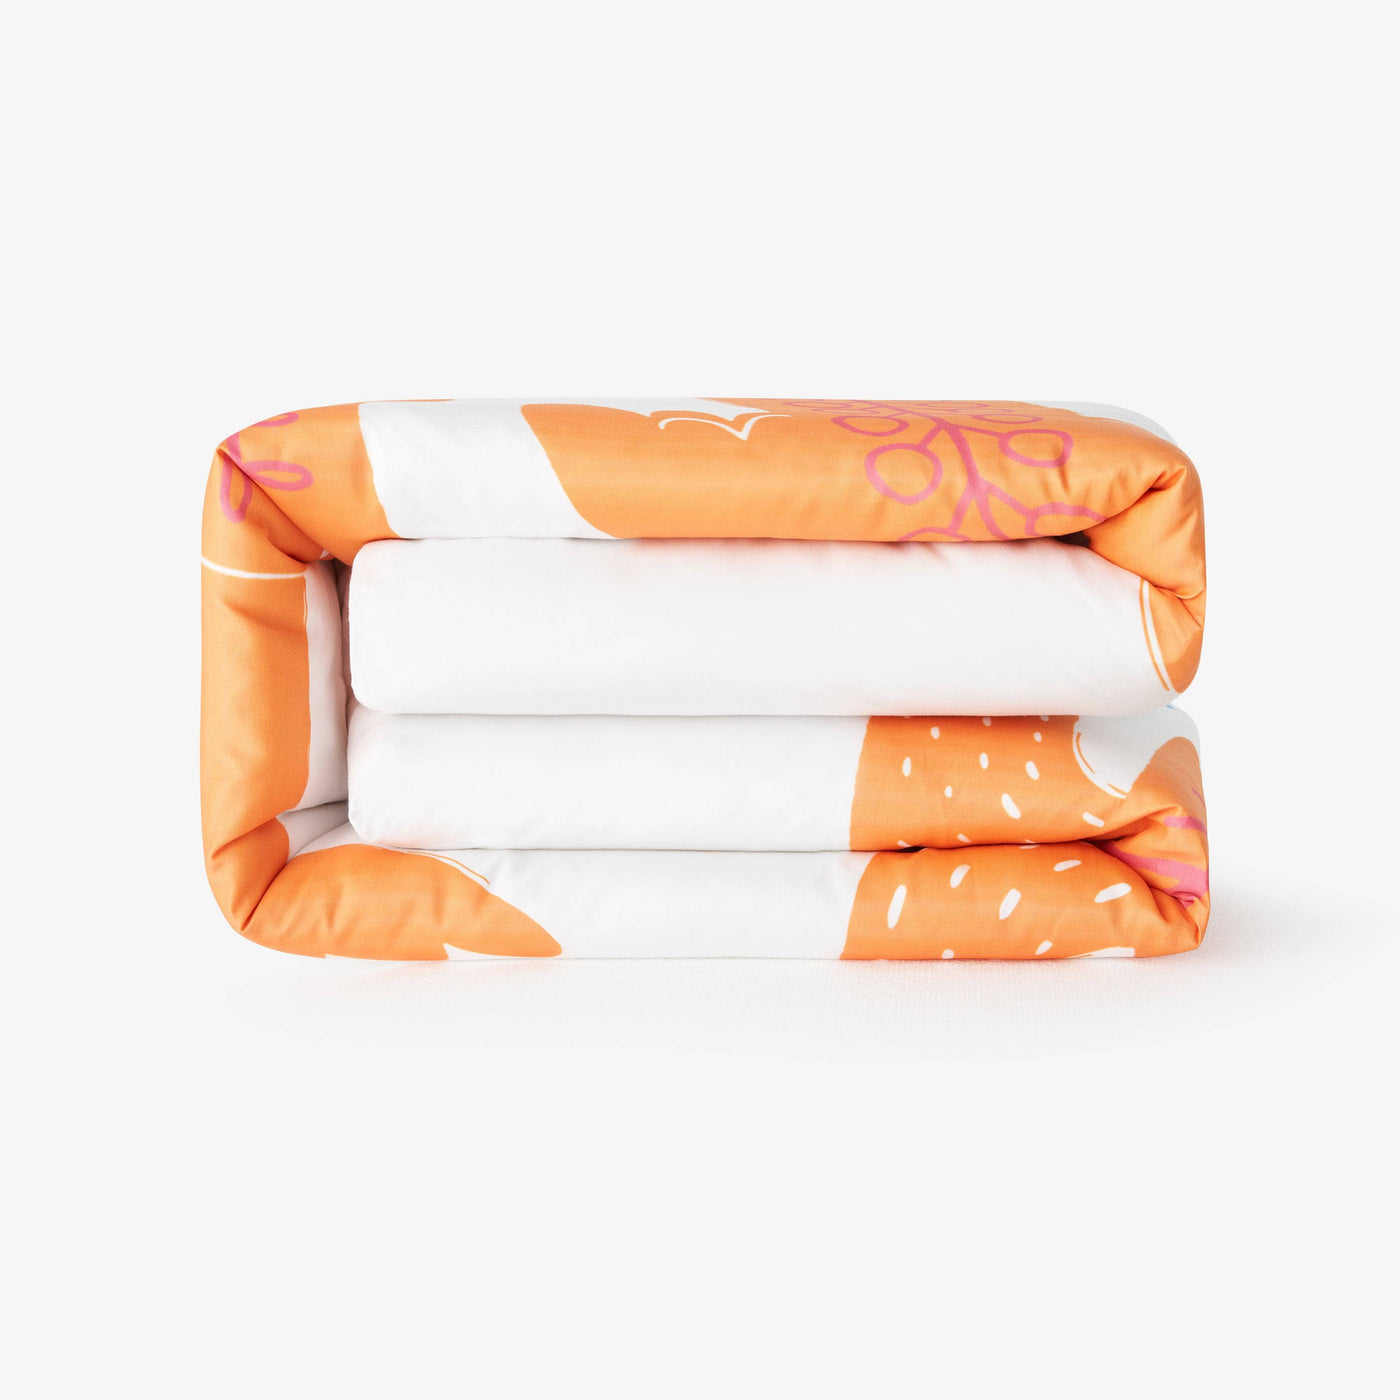 Bird Reversible Duvet Cover Set, Orange - White, 140x200 cm Kids Bedding sazy.com